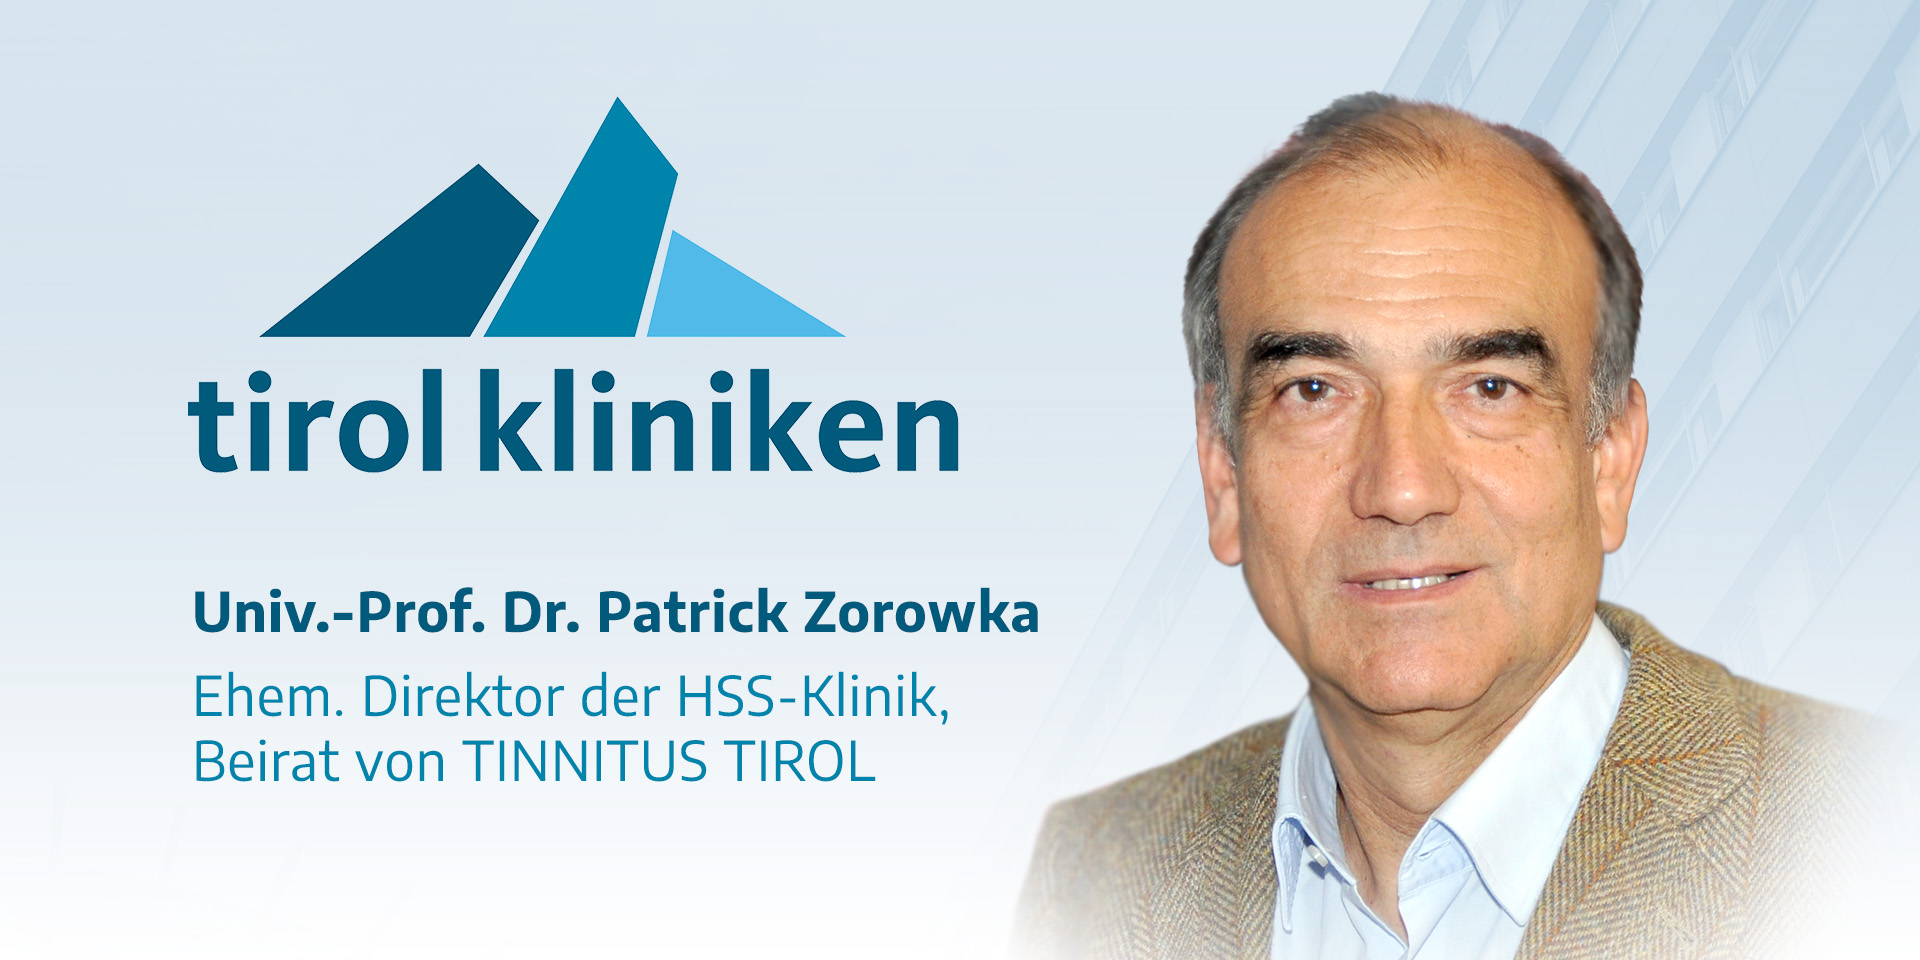 Univ.-Prof. Dr. Zorowka ist unser neuer Beirat